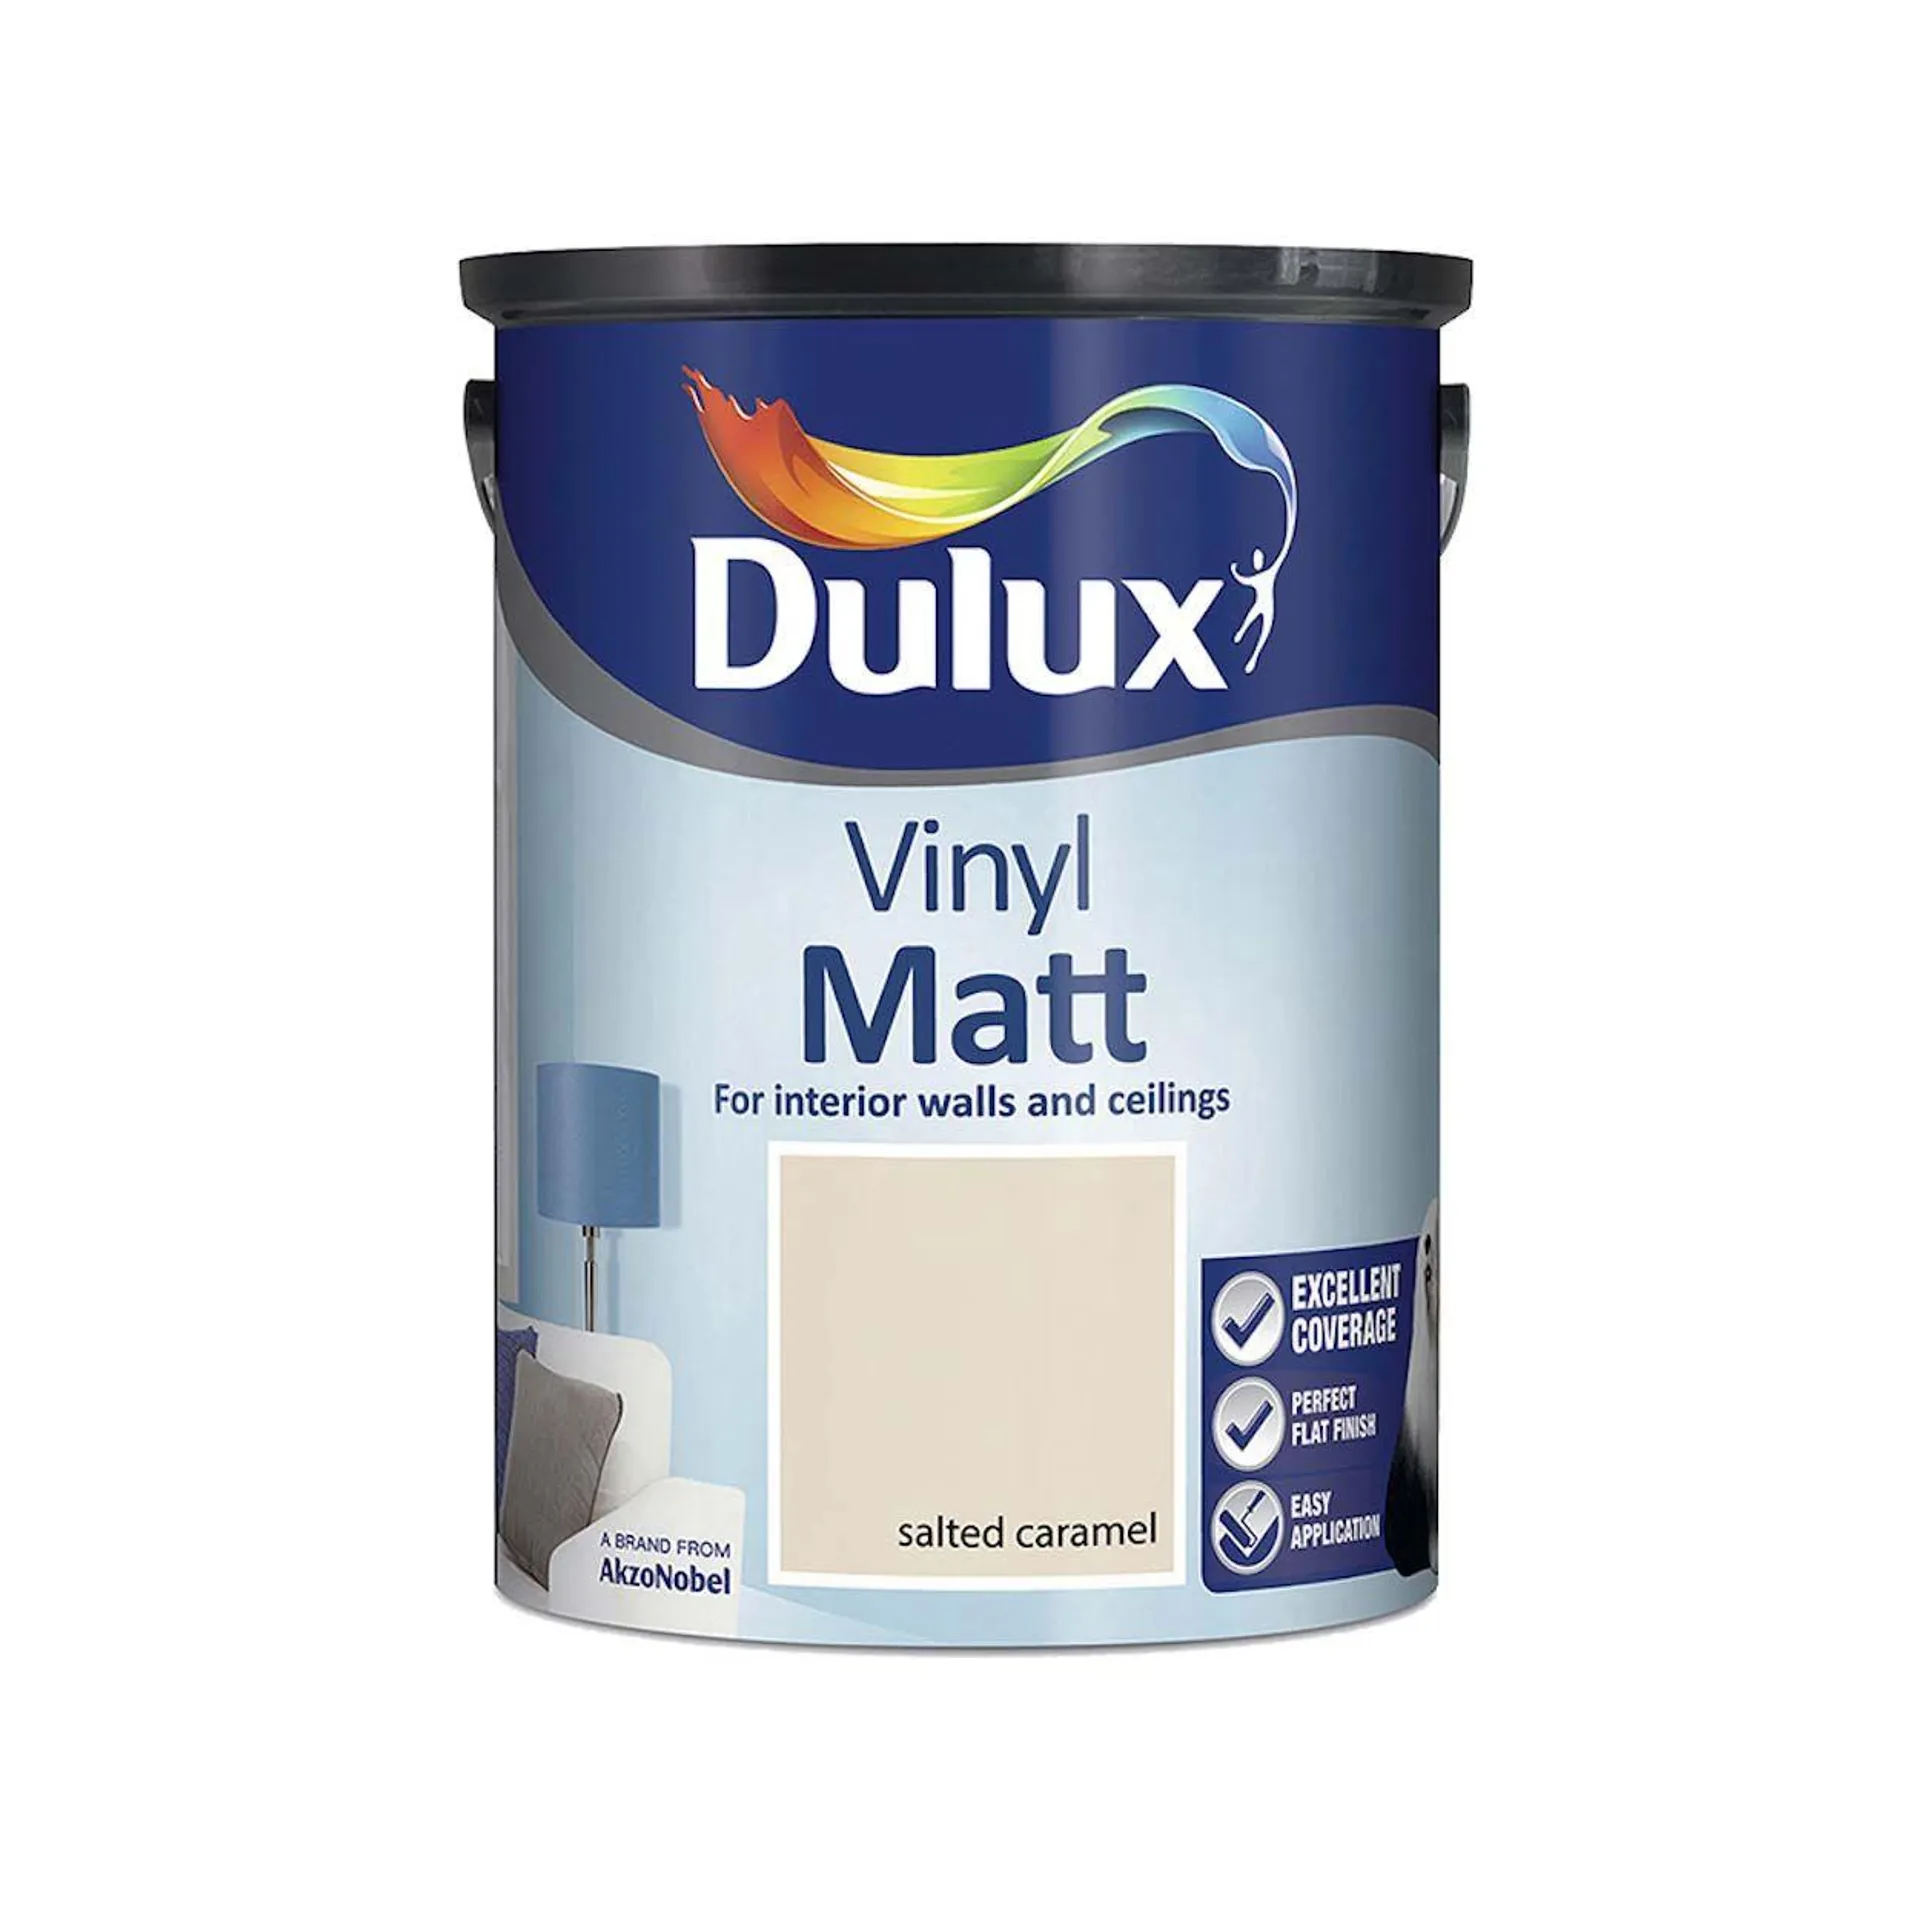 Dulux Vinyl Matt Salted Caramel 5L